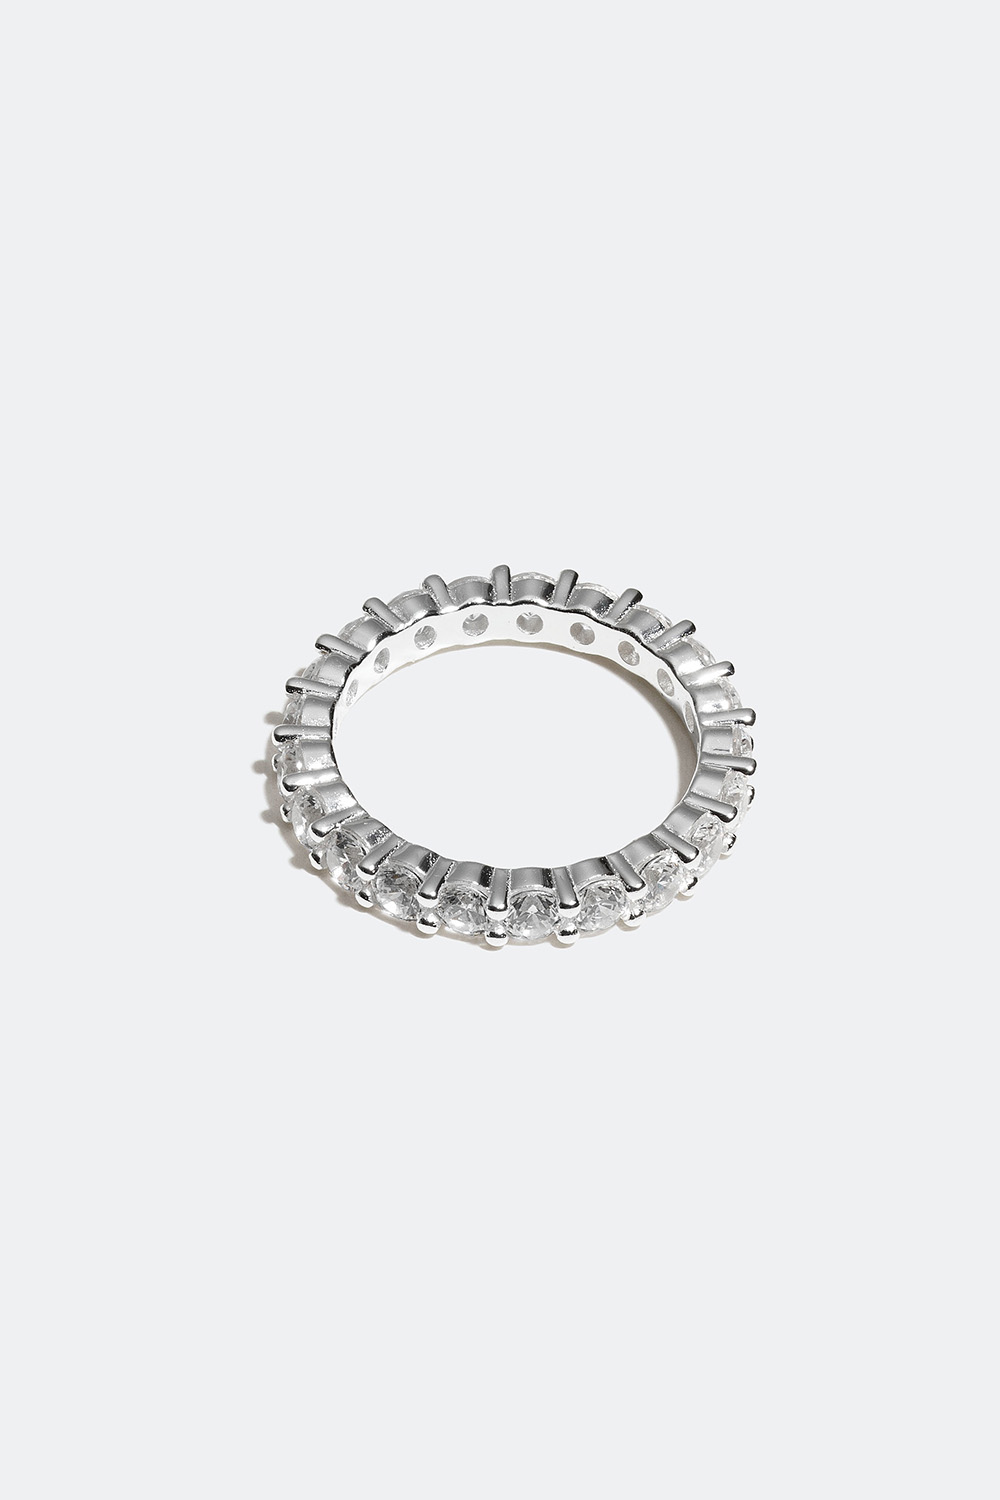 Ring i ekte sølv med Cubic Zirconia-steiner i gruppen Ekte sølv / Sølvringer / Sølv hos Glitter (55600039)